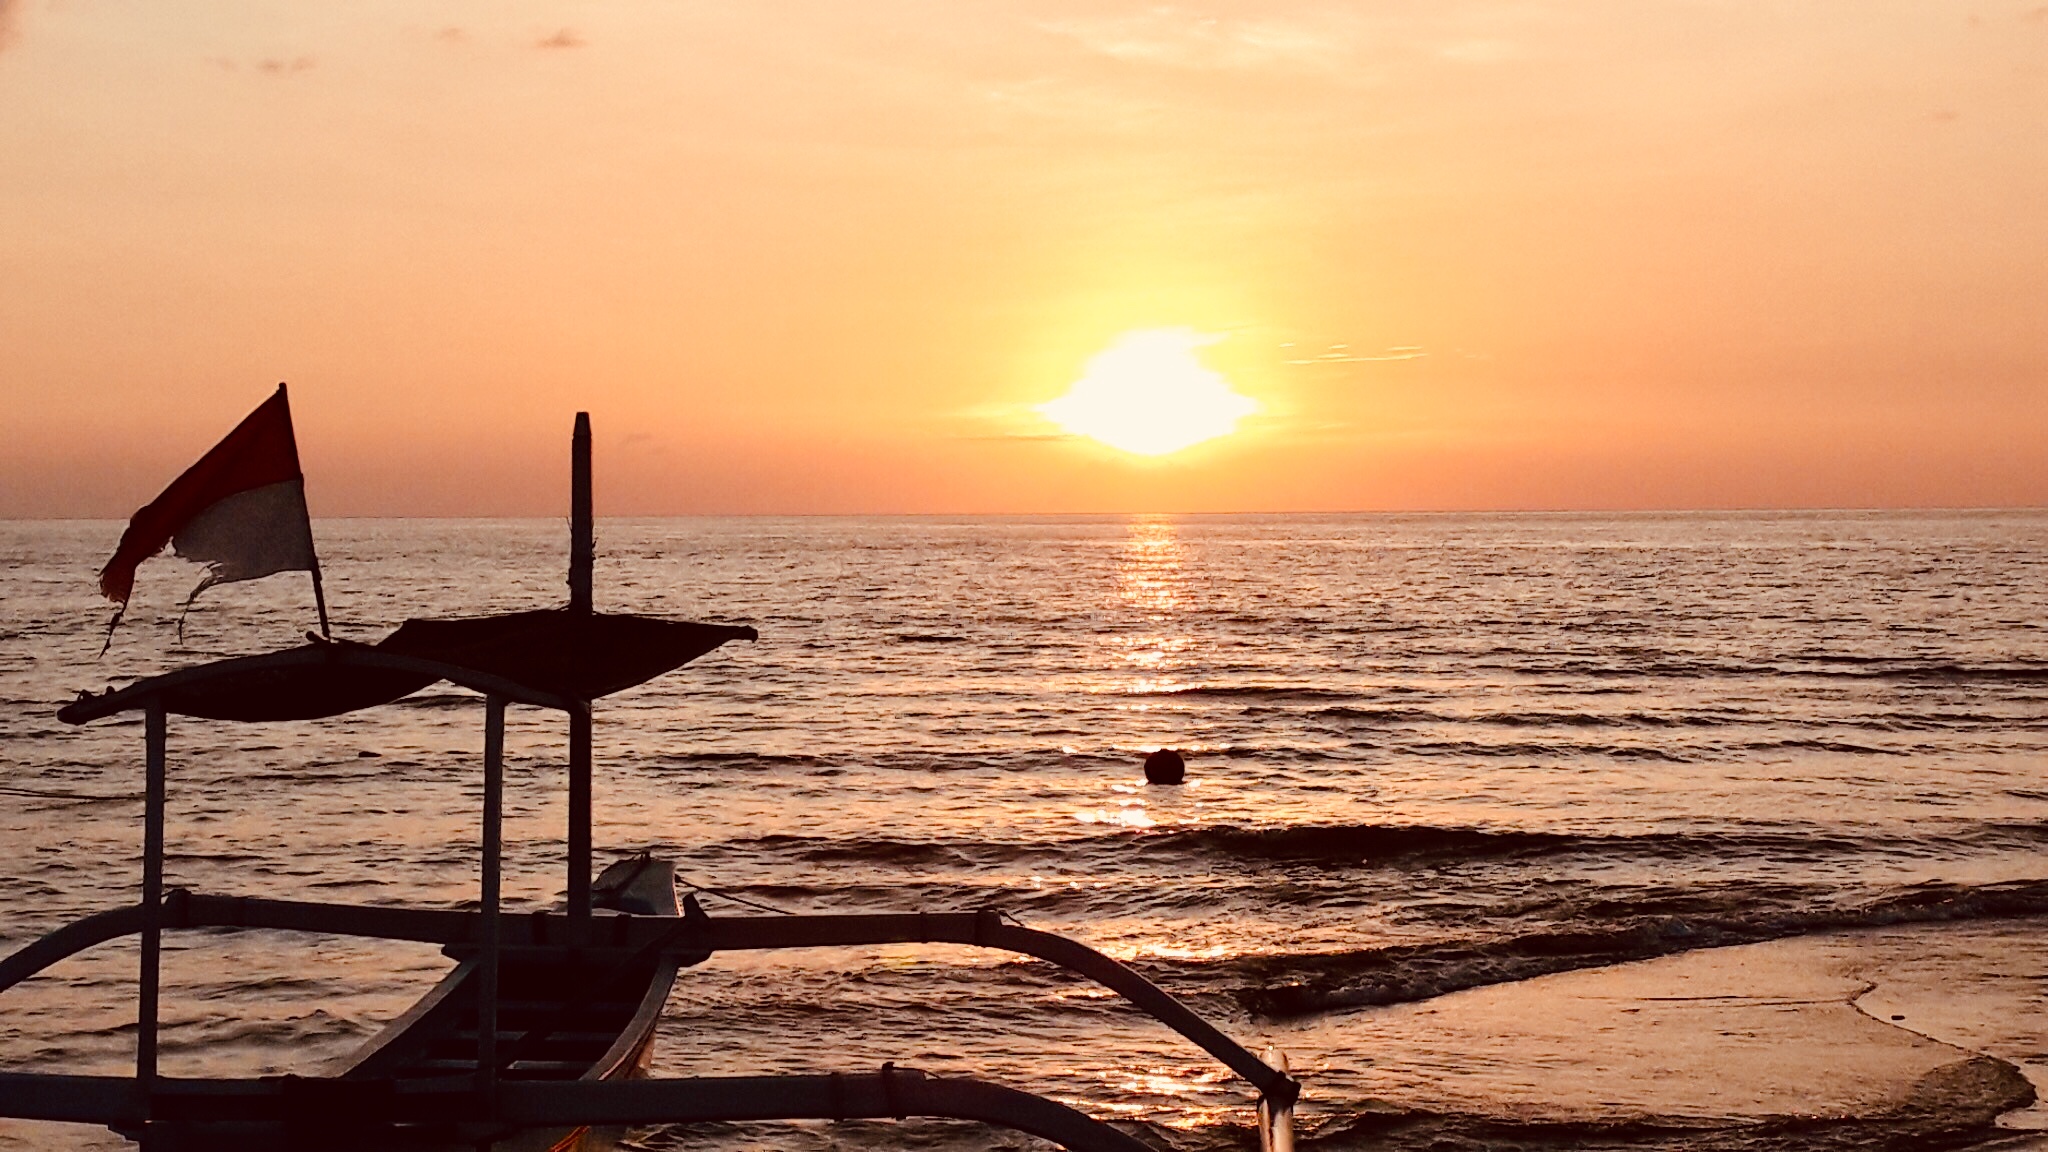 Bali Taman Beach Resort & Spa